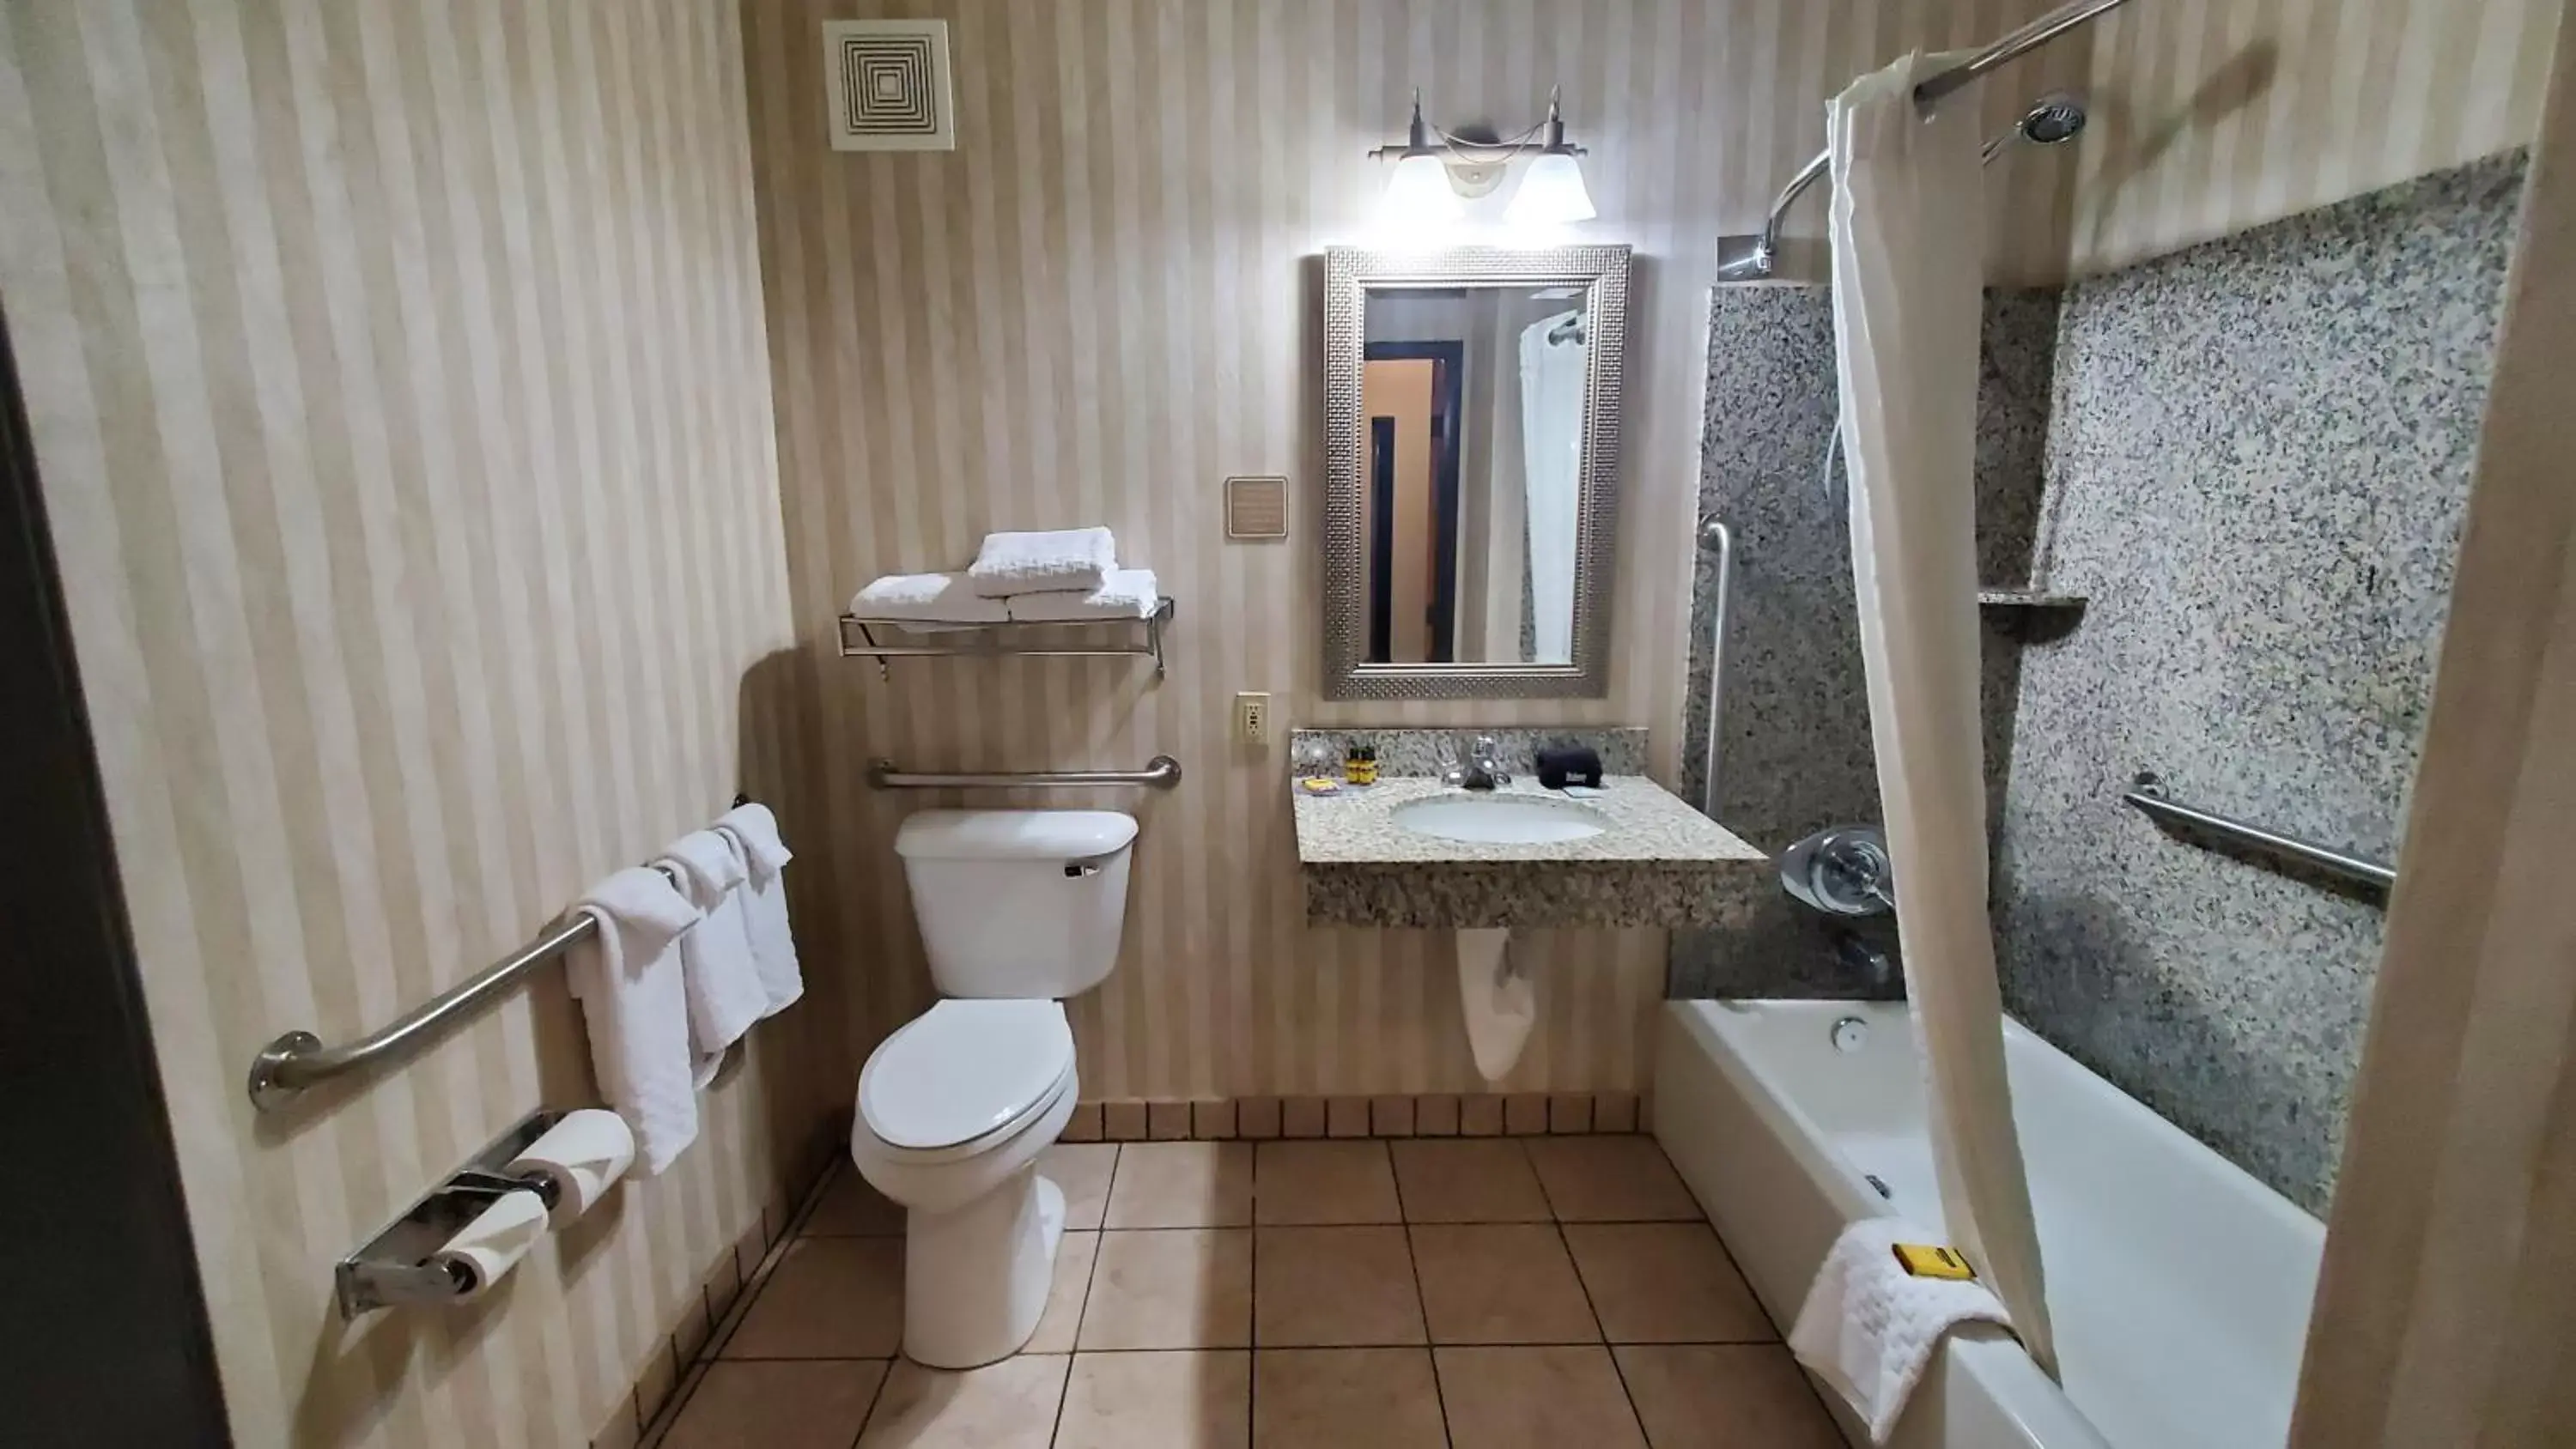 Bathroom in Best Western Plus Ellensburg Hotel